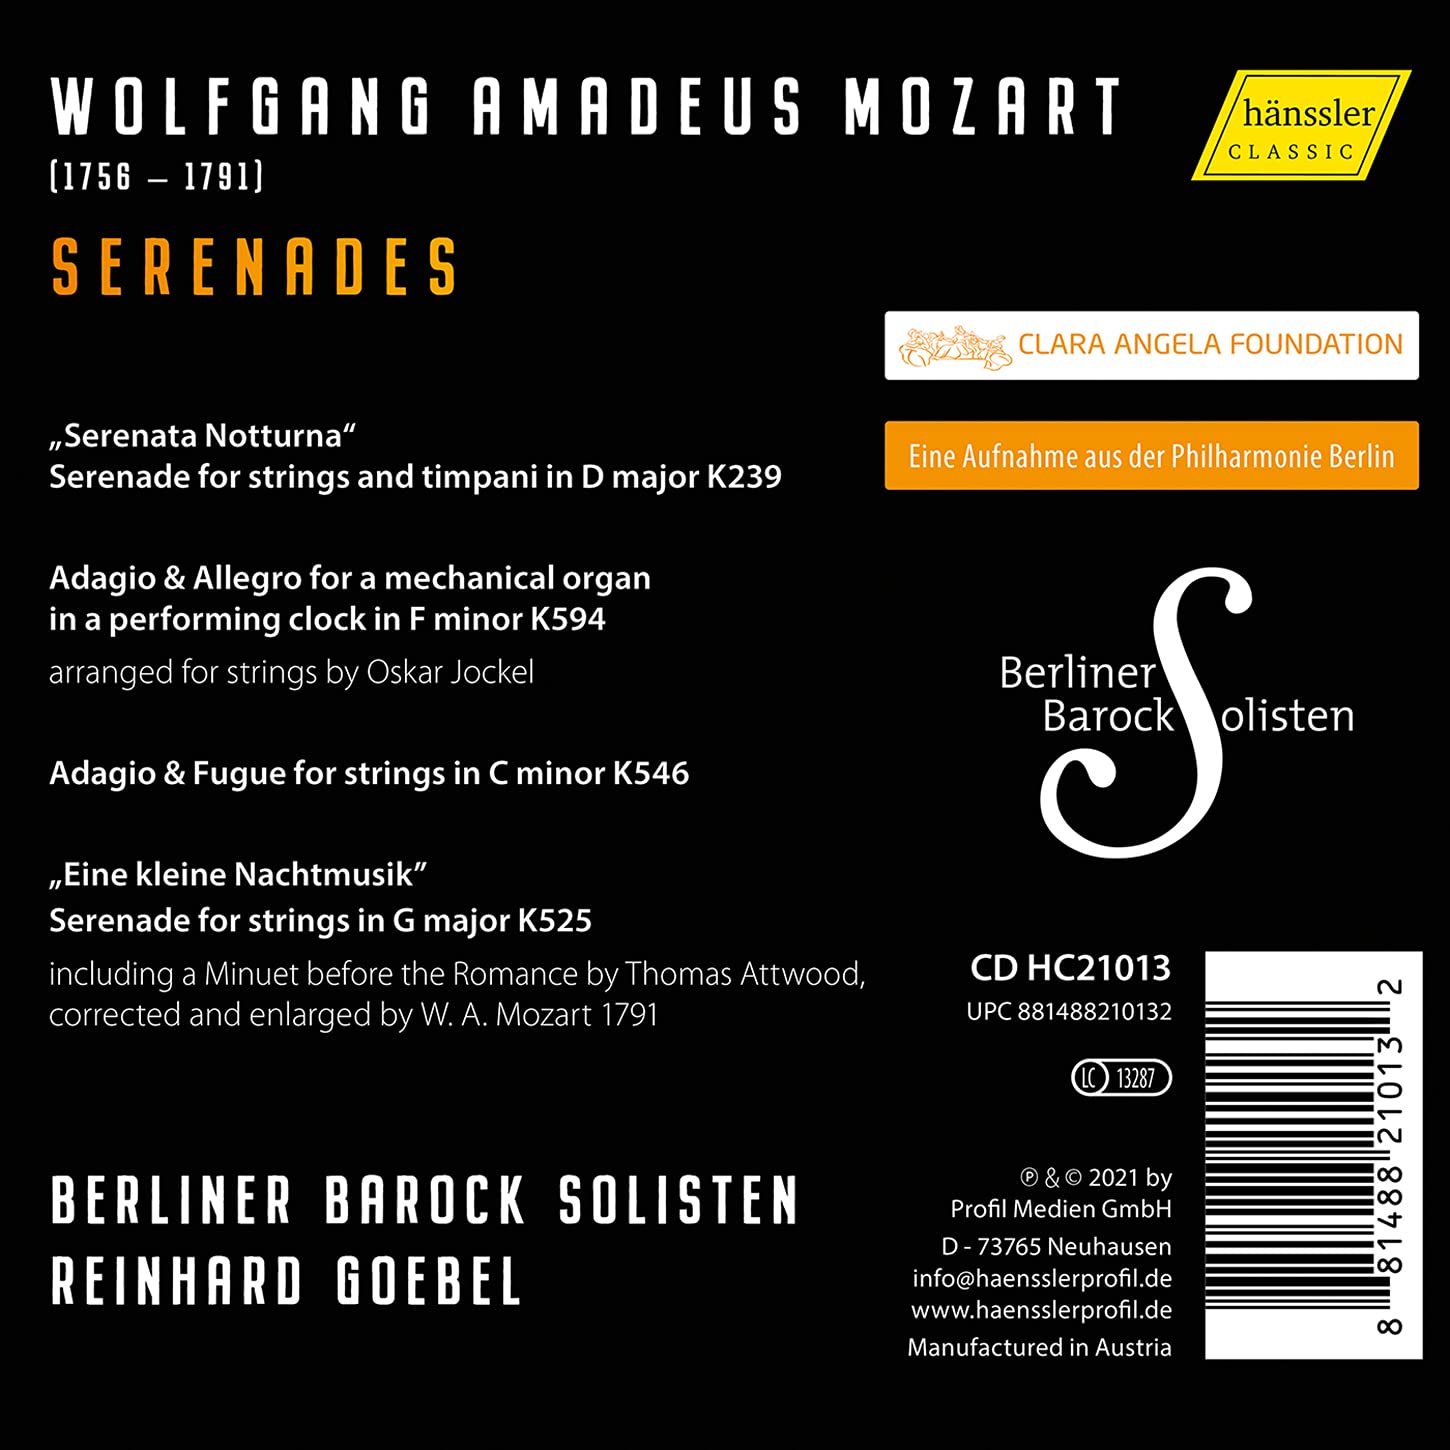 Reinhard Goebel 모차르트: '세레나데 노투르나' KV239, '아이네 클라이네 나흐트무지크' KV525, 아다지오와 알레그로 KV594 외 (Mozart Serenades)